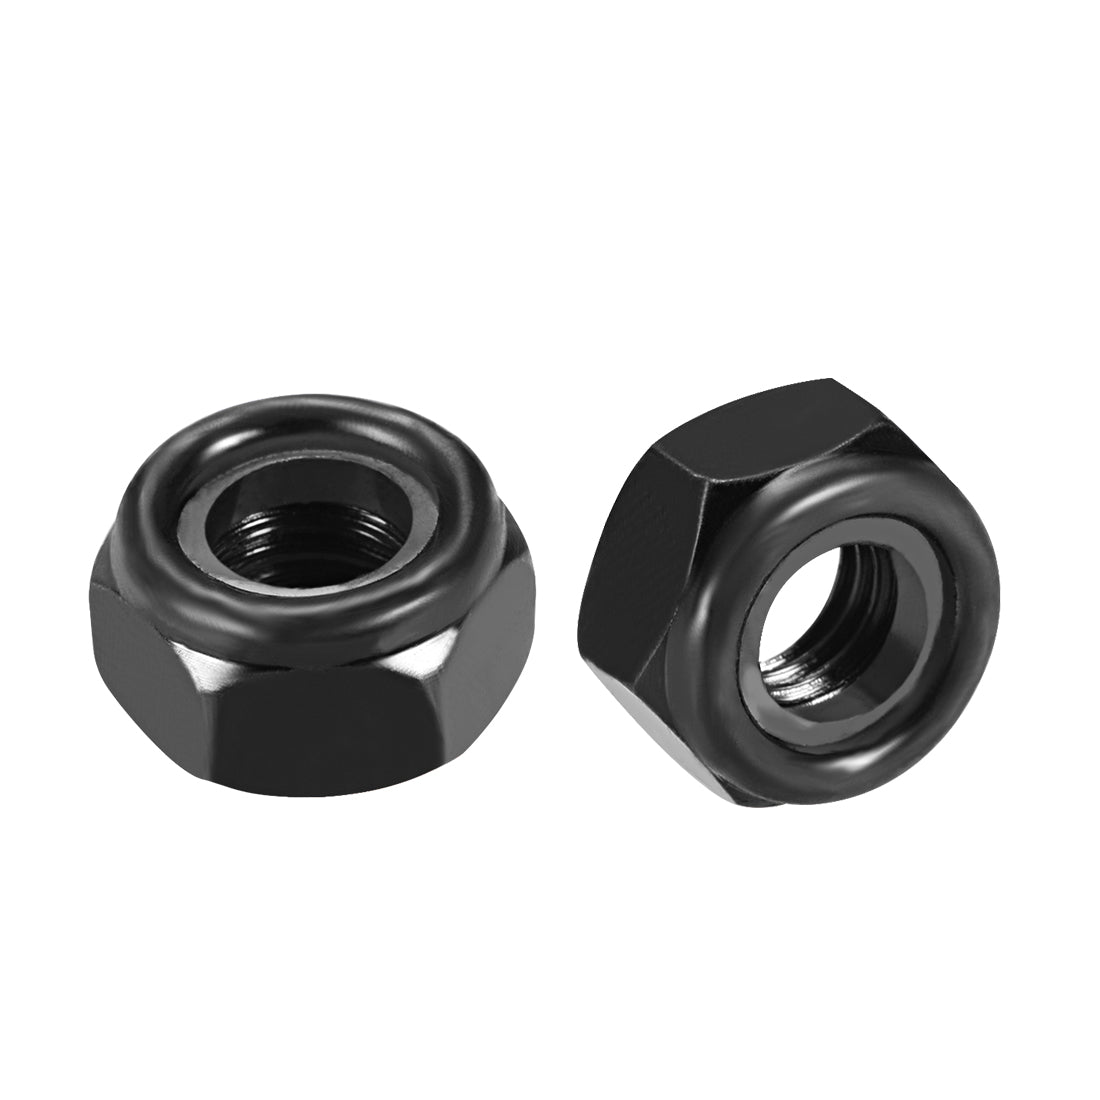 uxcell Uxcell M10x1.5mm Hex Lock Nuts Carbon Steel Nylon Insert Self-Lock Nuts, 10Pcs Black